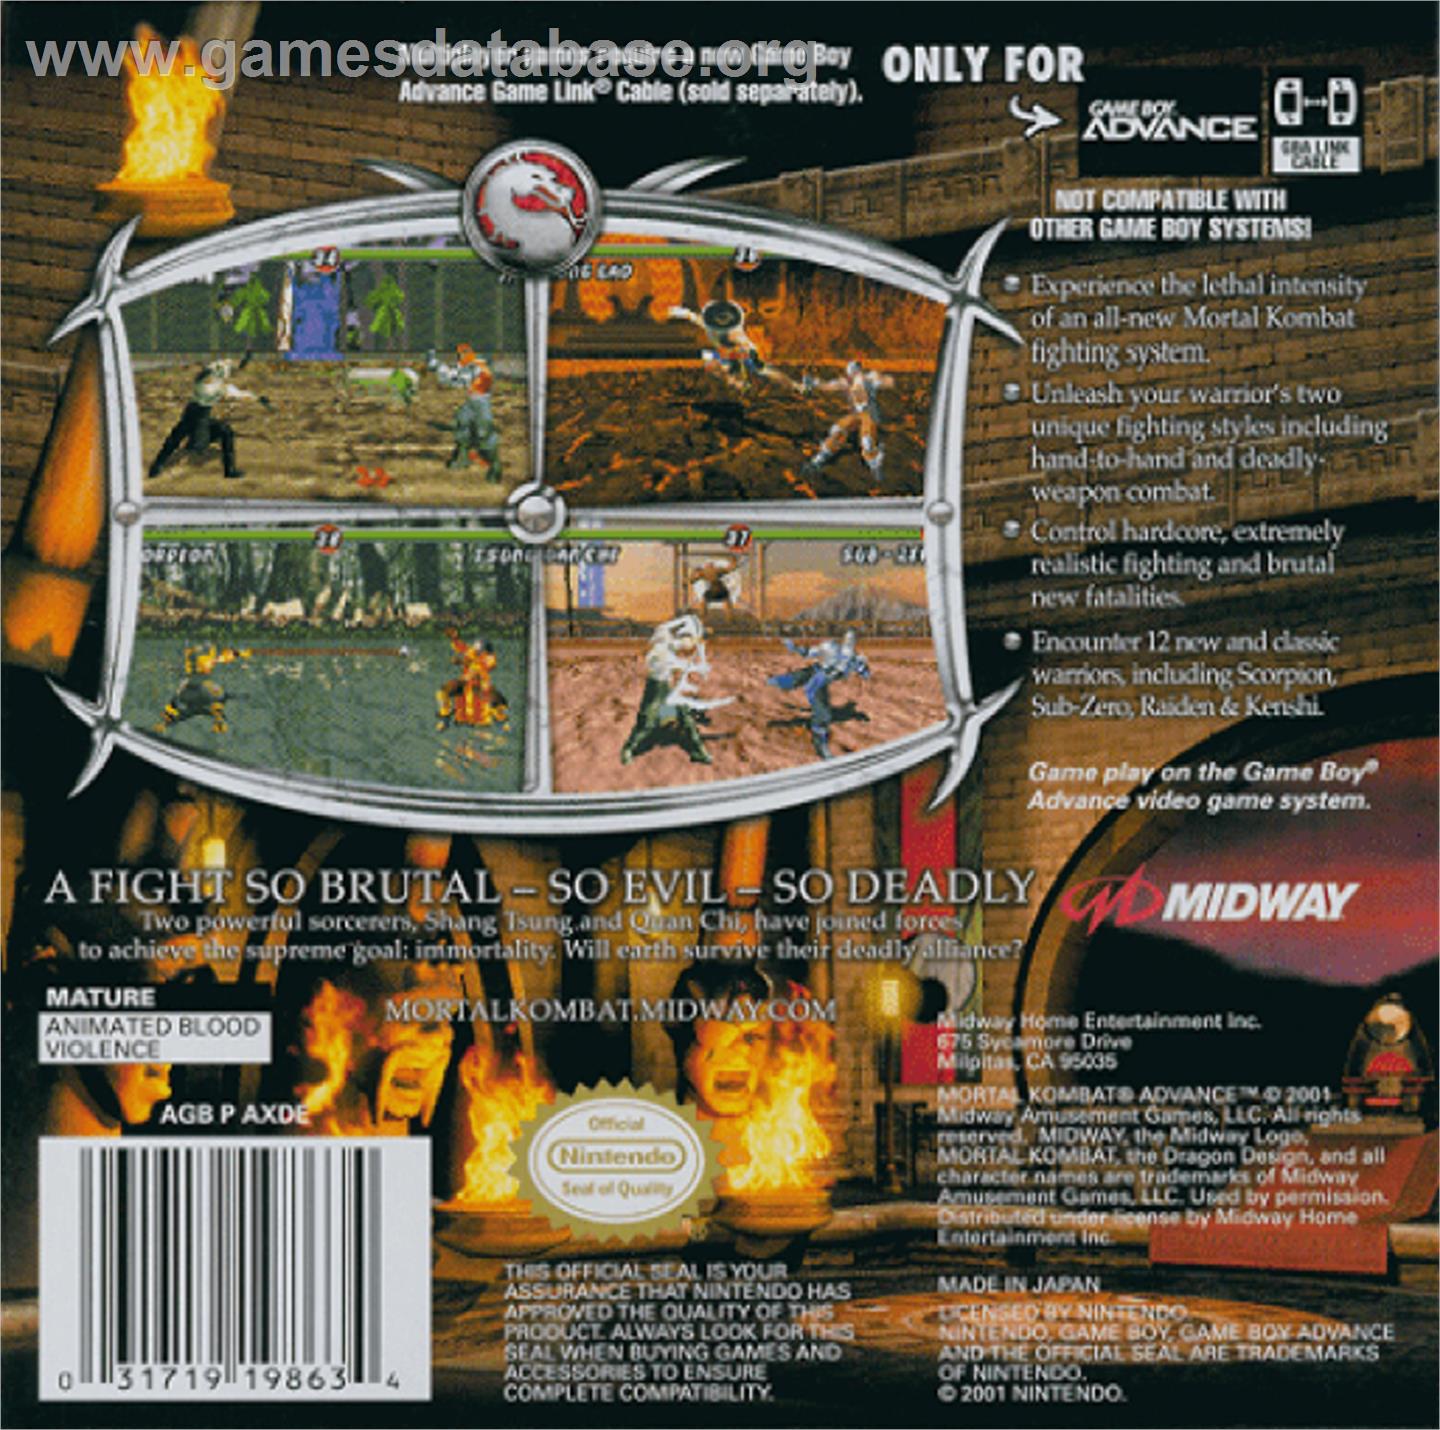 Mortal Kombat: Deadly Alliance - Nintendo Game Boy Advance - Artwork - Box Back